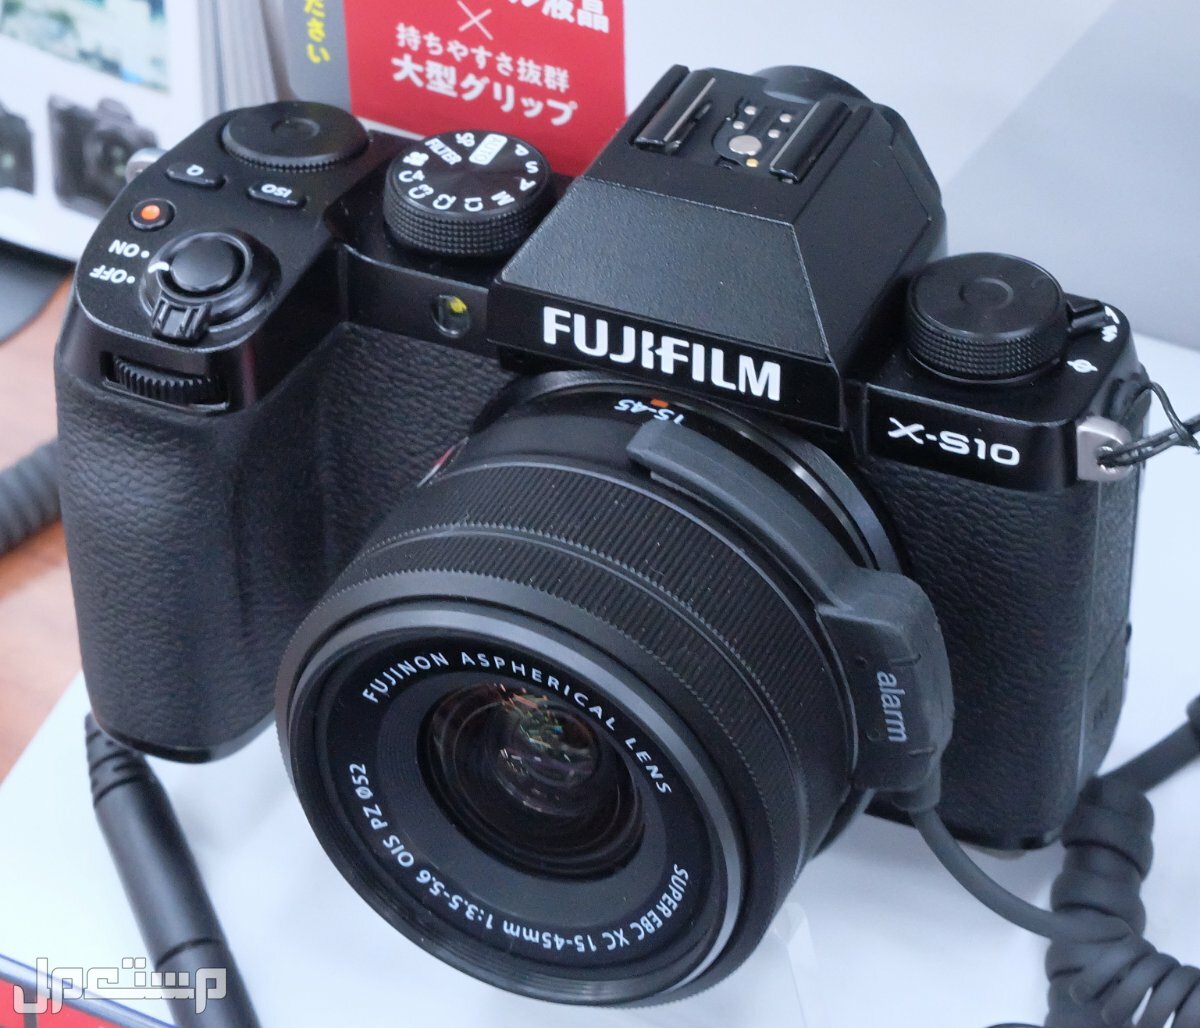 مواصفات ومميزات وعيوب كاميرات التصوير فوجي فيلم في الجزائر مواصفات كاميرا Fujifilm X-S10